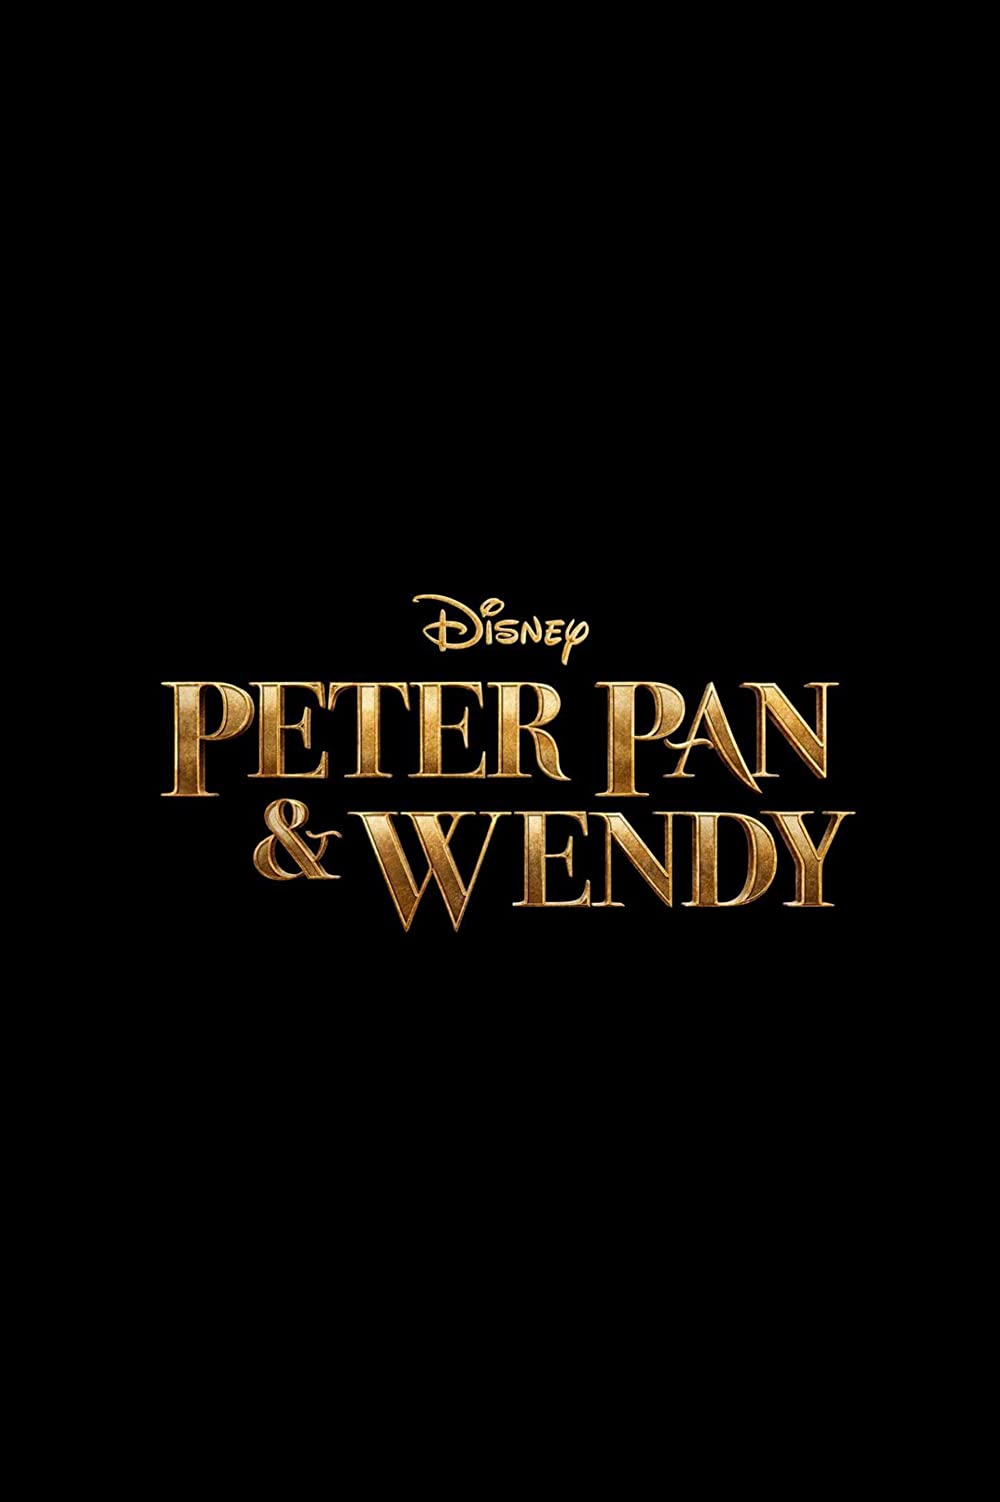 Filmbeschreibung zu Peter Pan